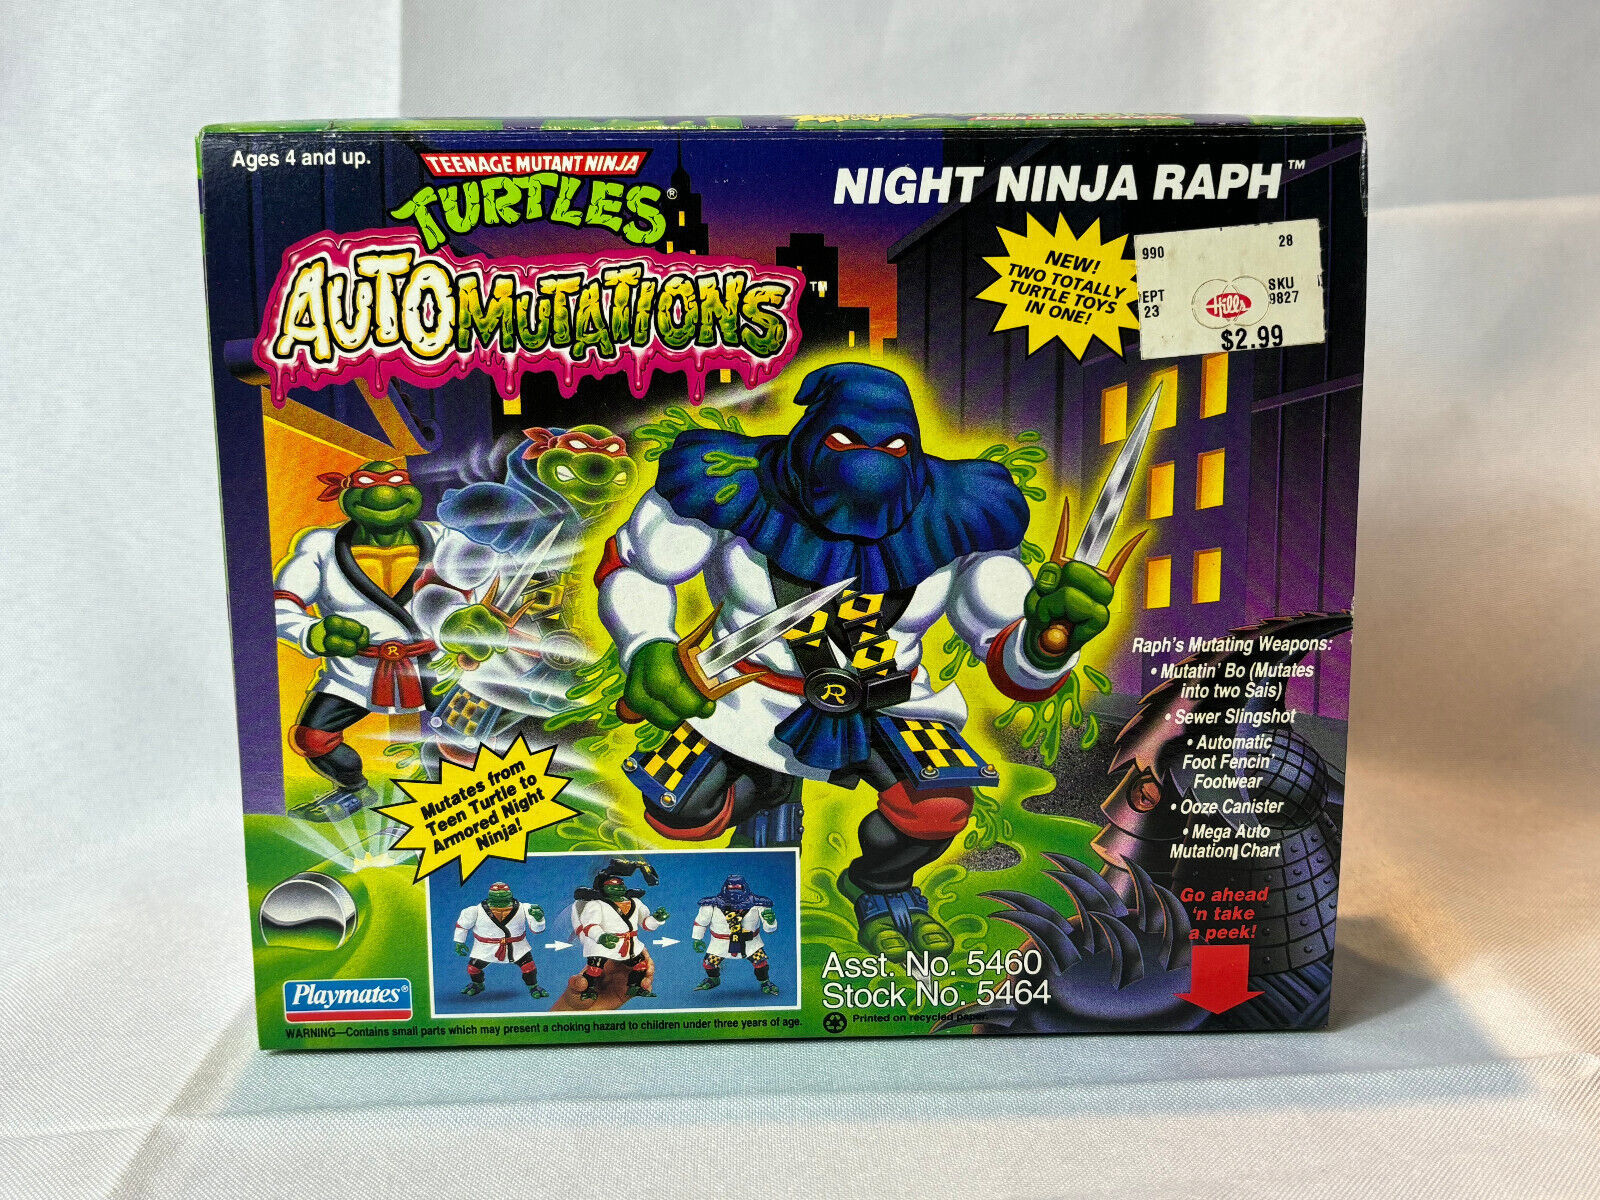 1993 Playmates Toys TMNT Automutations NIGHT NINJA RAPH Figure Factory Sealed - $79.15